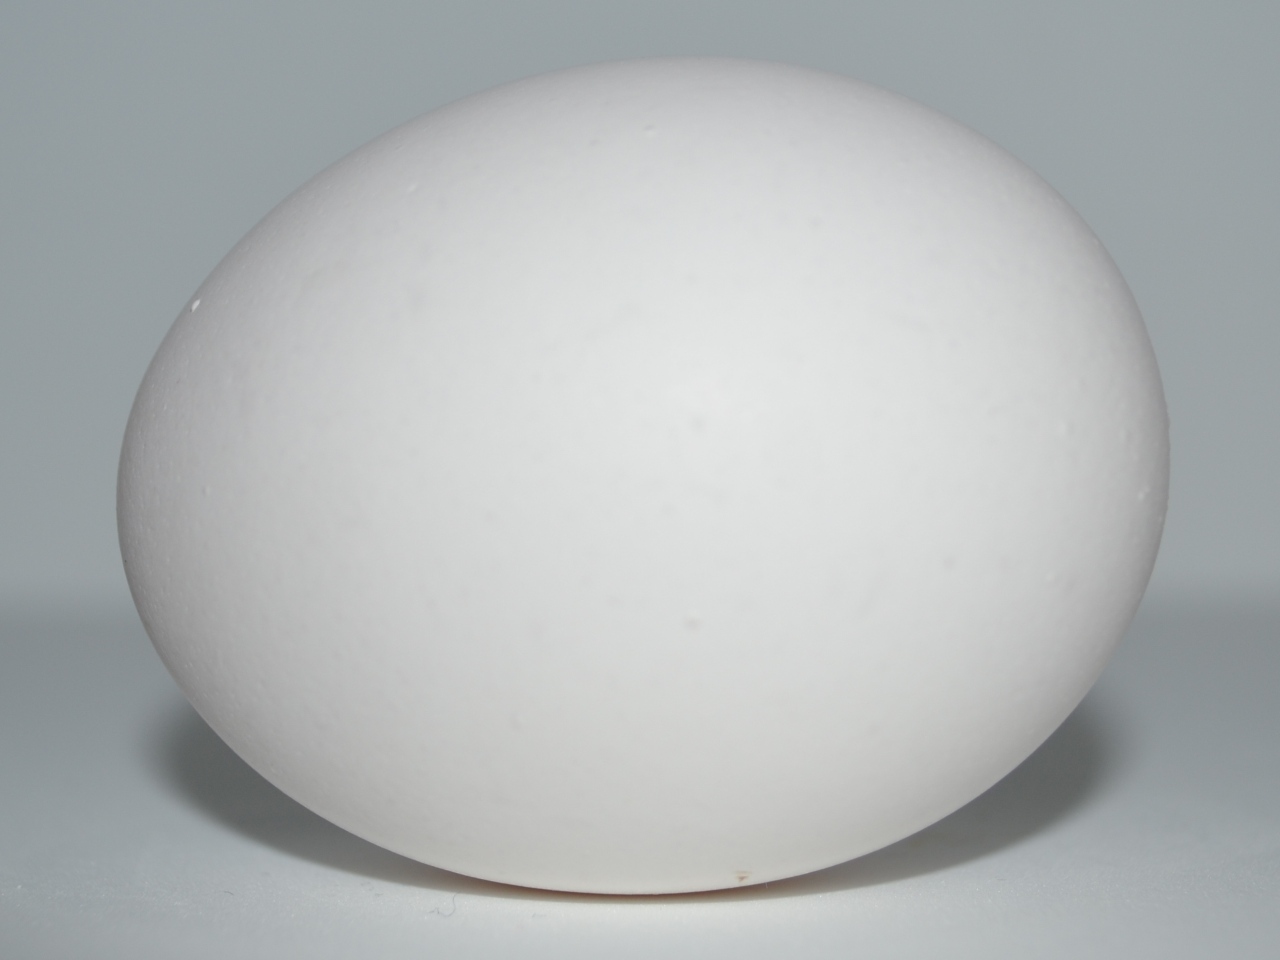 White egg photo